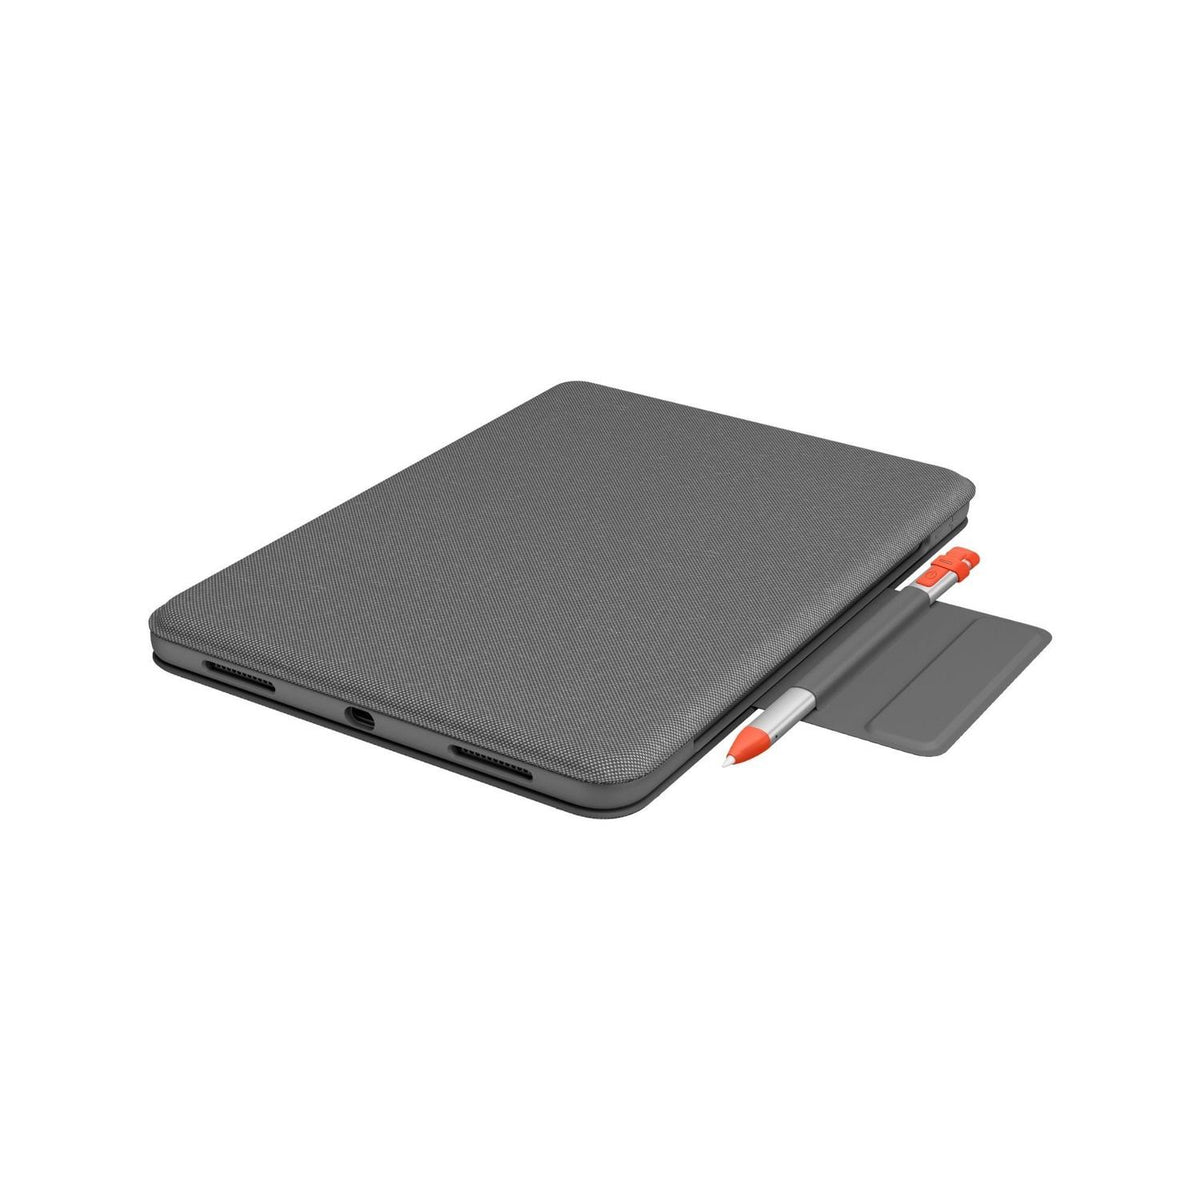 Logitech Folio Con Teclado Funda Folio con Teclado Folio Touch Trackpad compatible con iPad Air Gen 4 - vertikal